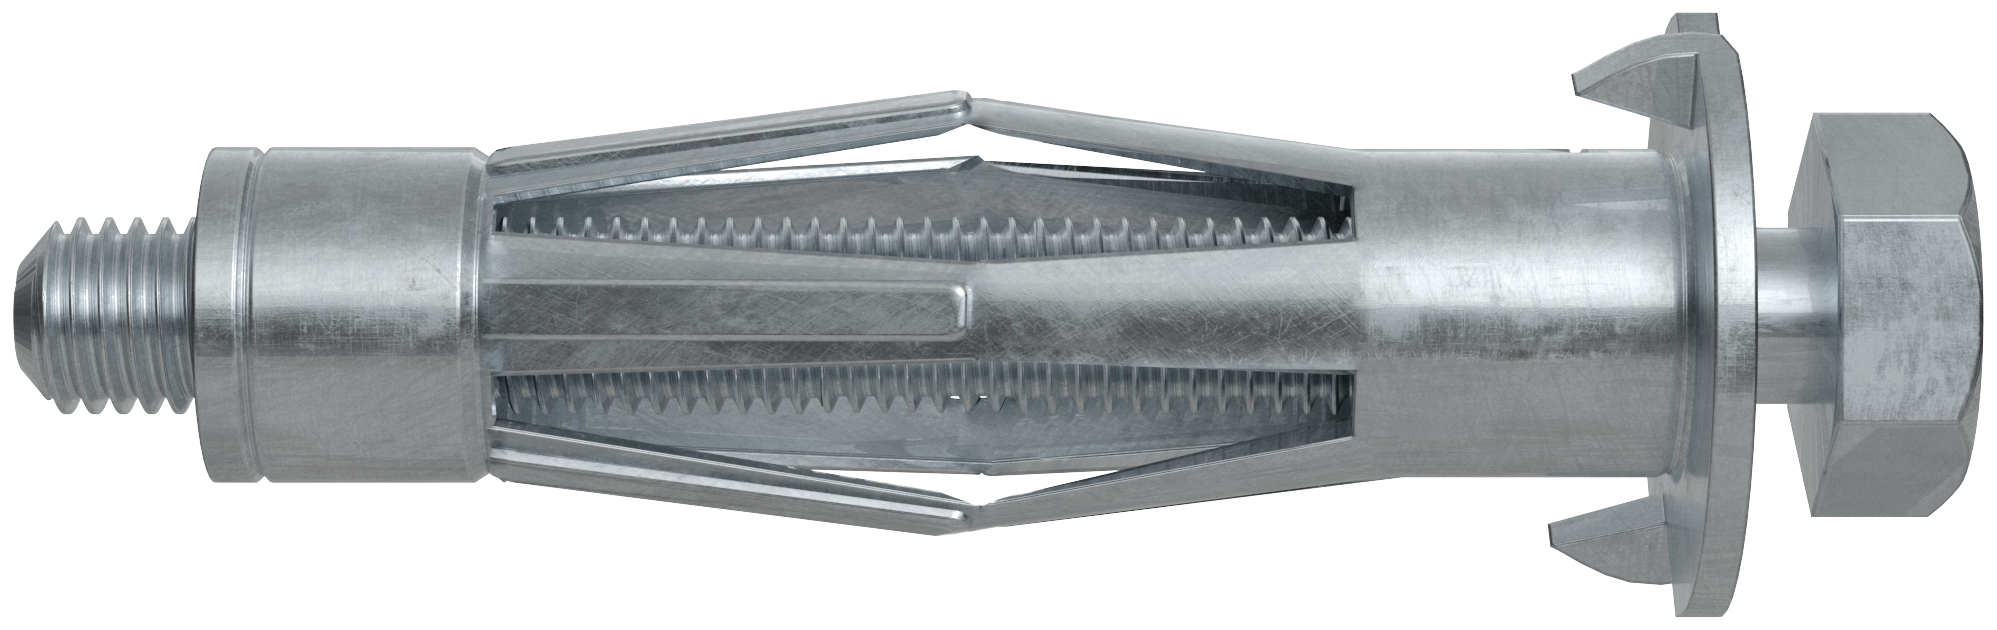 fischer Tasselli cartongesso HM 8X54 S con vite (1 Pz.) Fissaggio in metallo zincato per intercapedini con vite a testa esagonale.